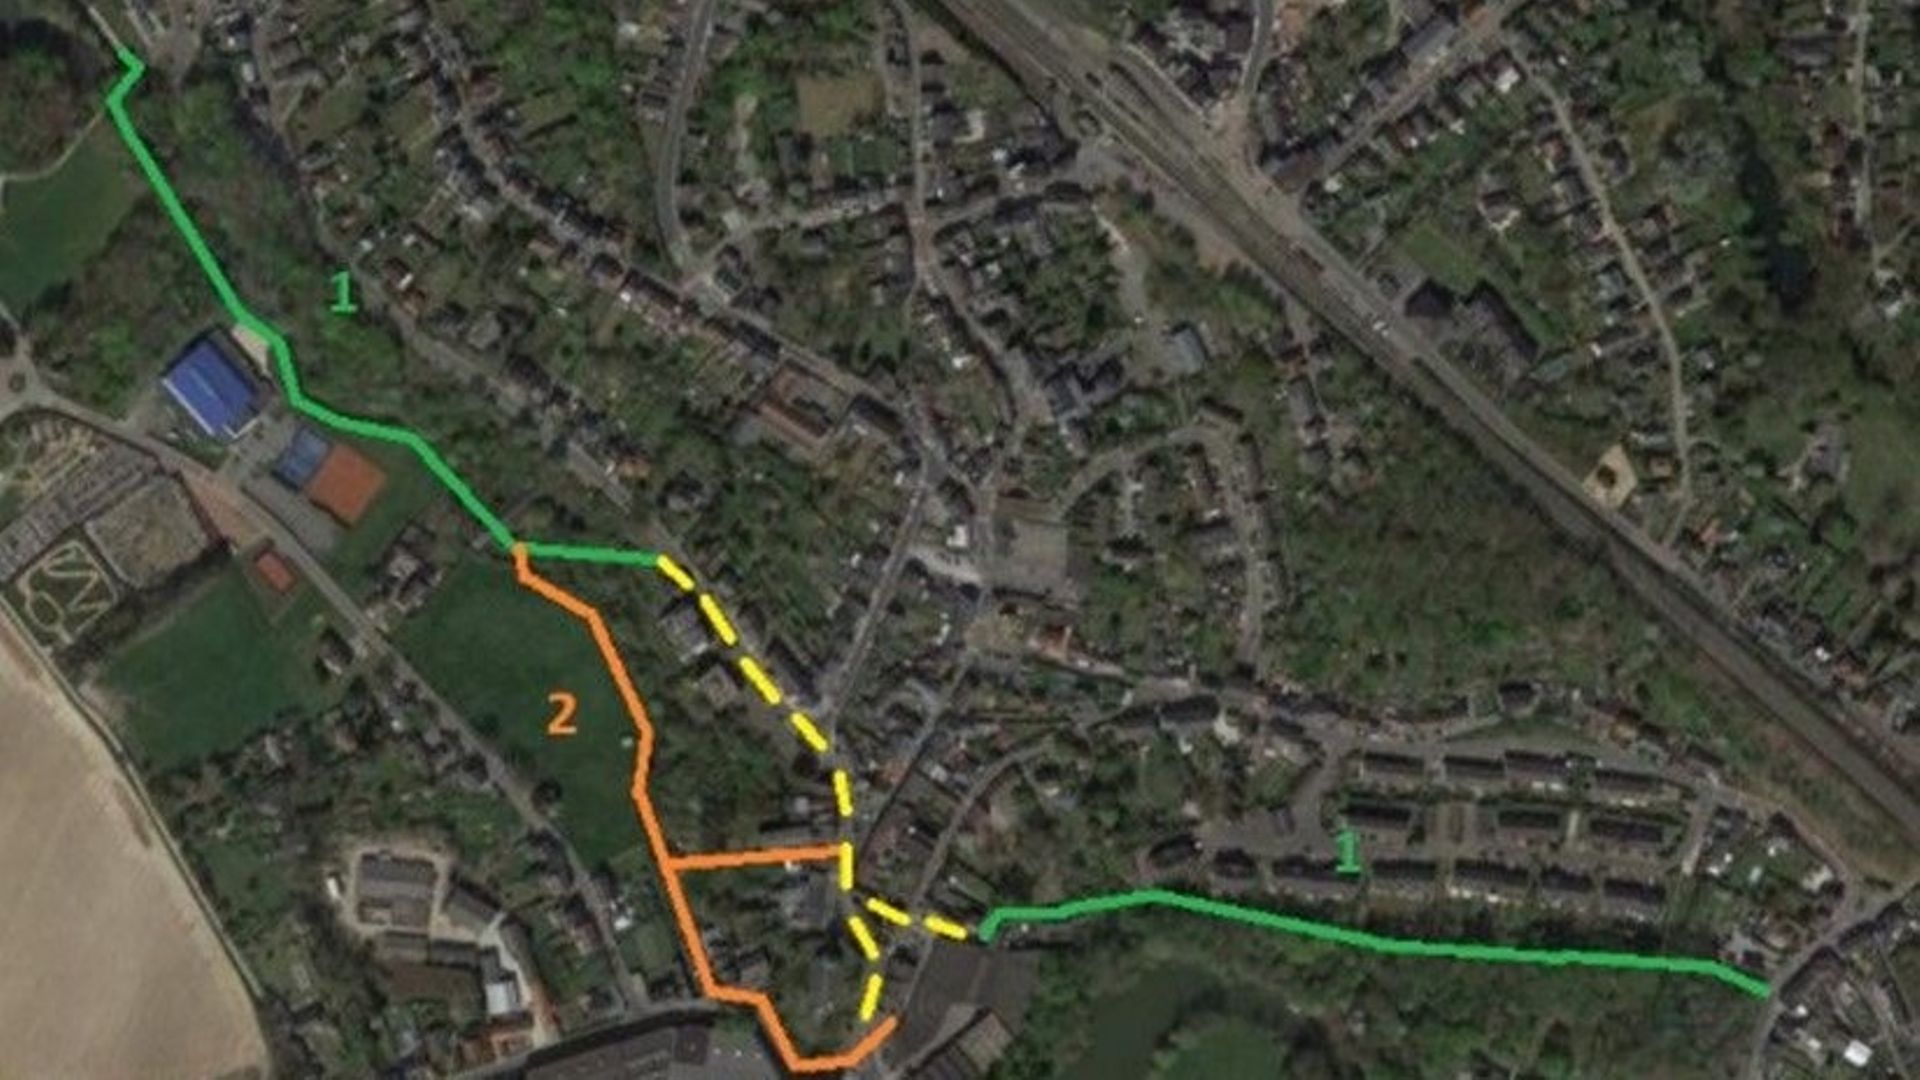 Le tracé vert en haut à gauche correspond au premier tronçon de la coulée verte. En orange, le deuxième tronçon qui rejoindra les anciennes brasseries. La ligne verte en bas à droite est le sentier qui rejoint Hévillers.